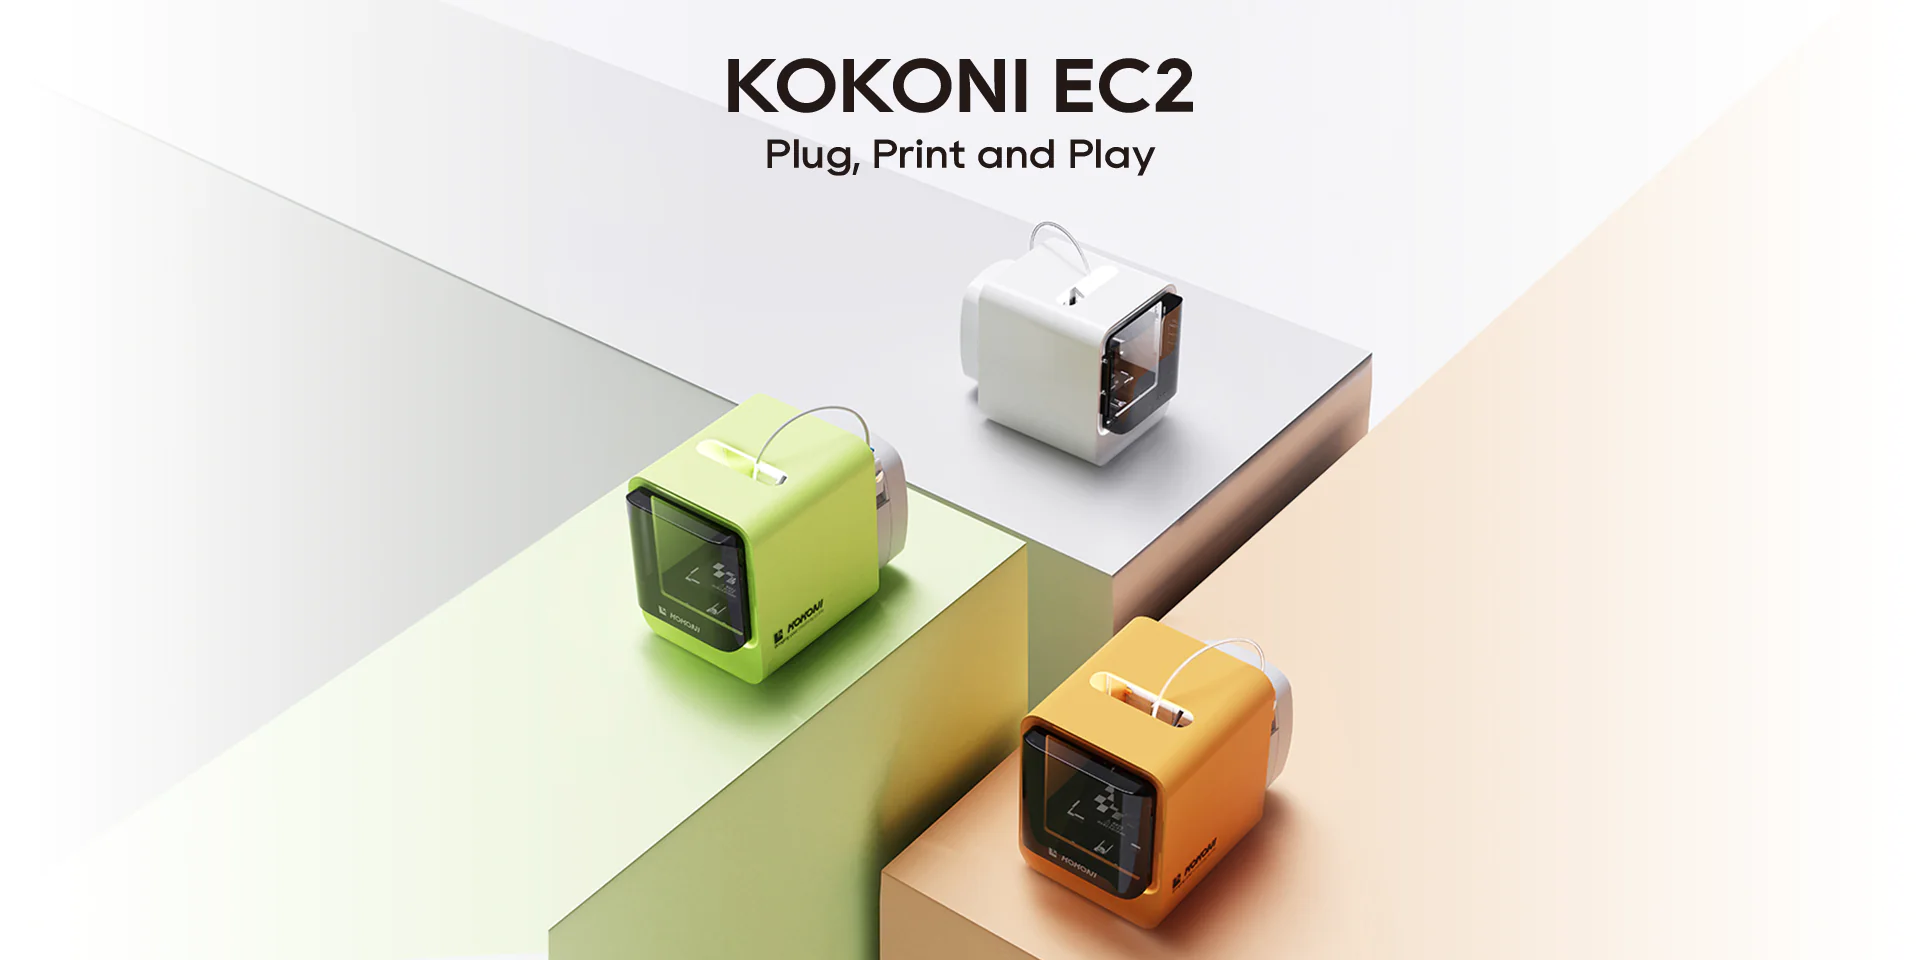 Klein & kinderleicht zu bedienen: KOKONI EC2 3D-Drucker